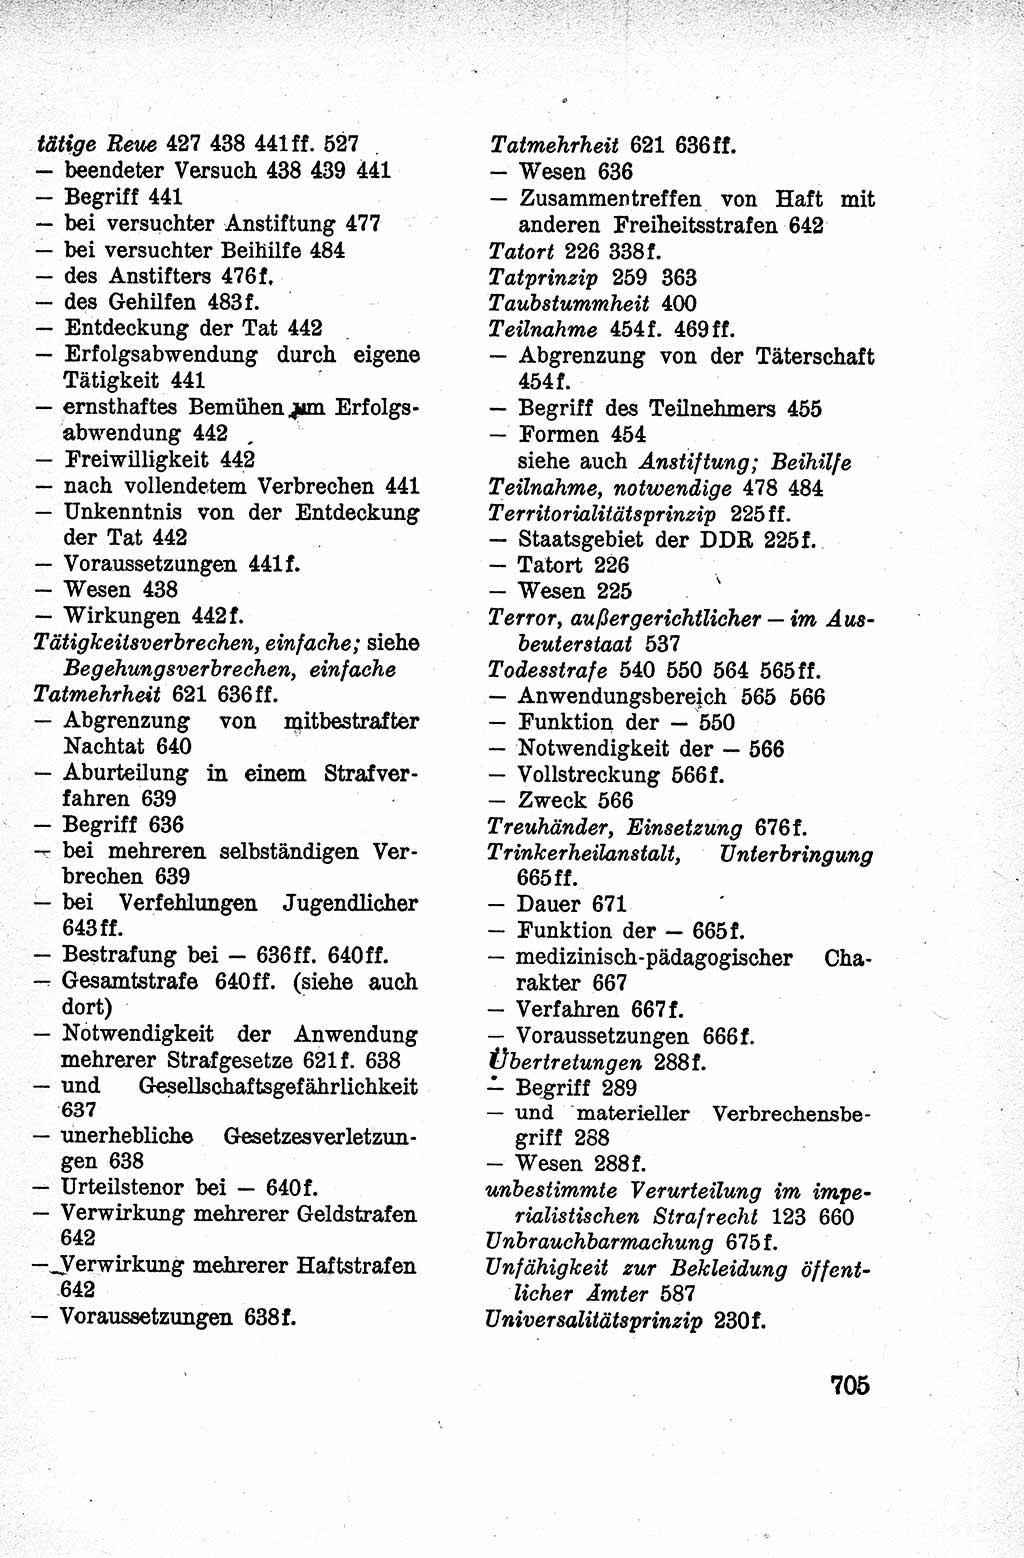 Lehrbuch des Strafrechts der Deutschen Demokratischen Republik (DDR), Allgemeiner Teil 1959, Seite 705 (Lb. Strafr. DDR AT 1959, S. 705)